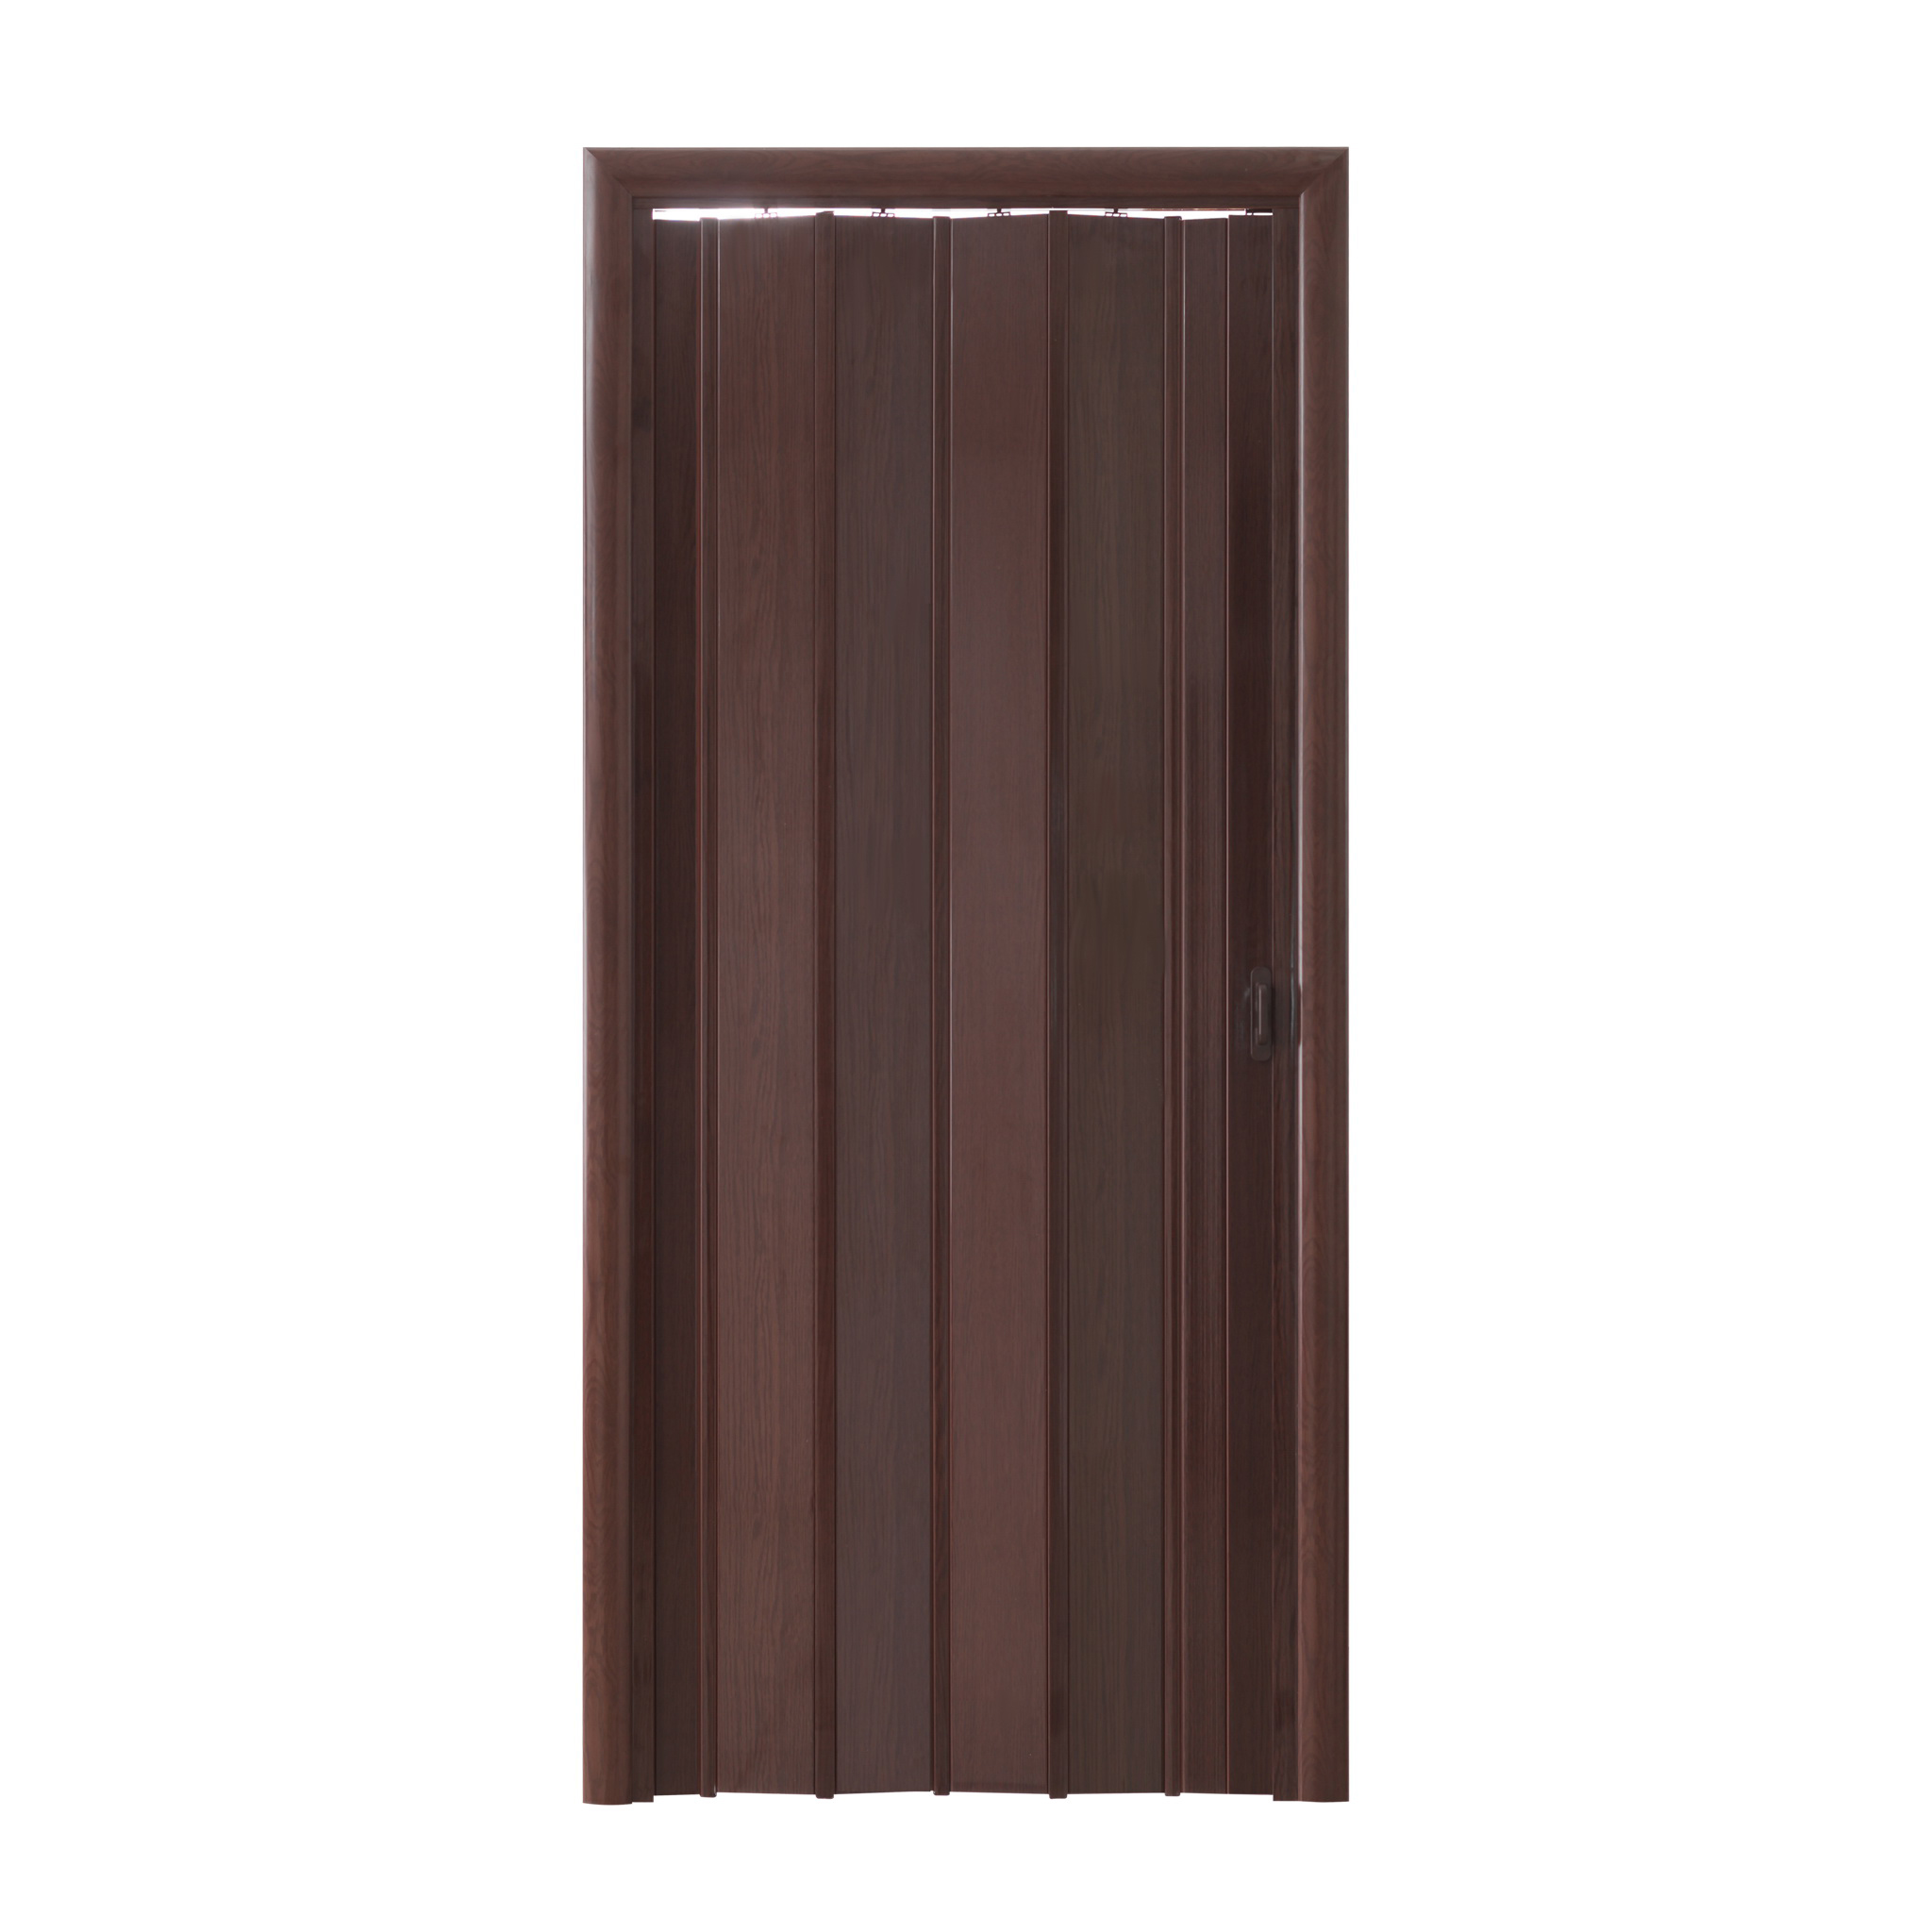 Дверь гармошка межкомнатная раздвижная Венге, 690-840 мм